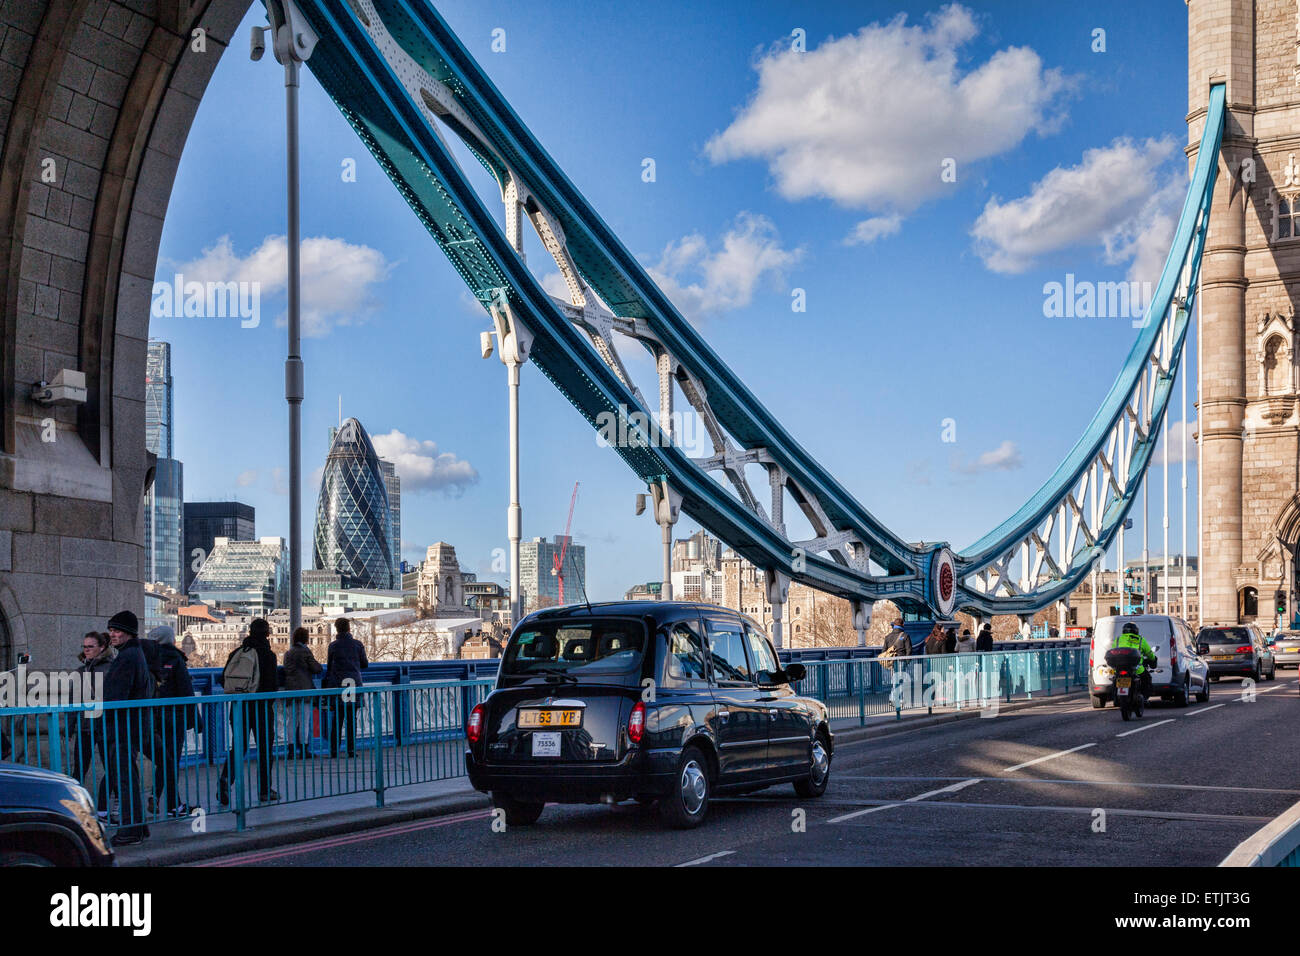 Black taxi cab sur Tower Bridge sur une journée d'hiver ensoleillée, Londres, Angleterre, Royaume-Uni. Banque D'Images